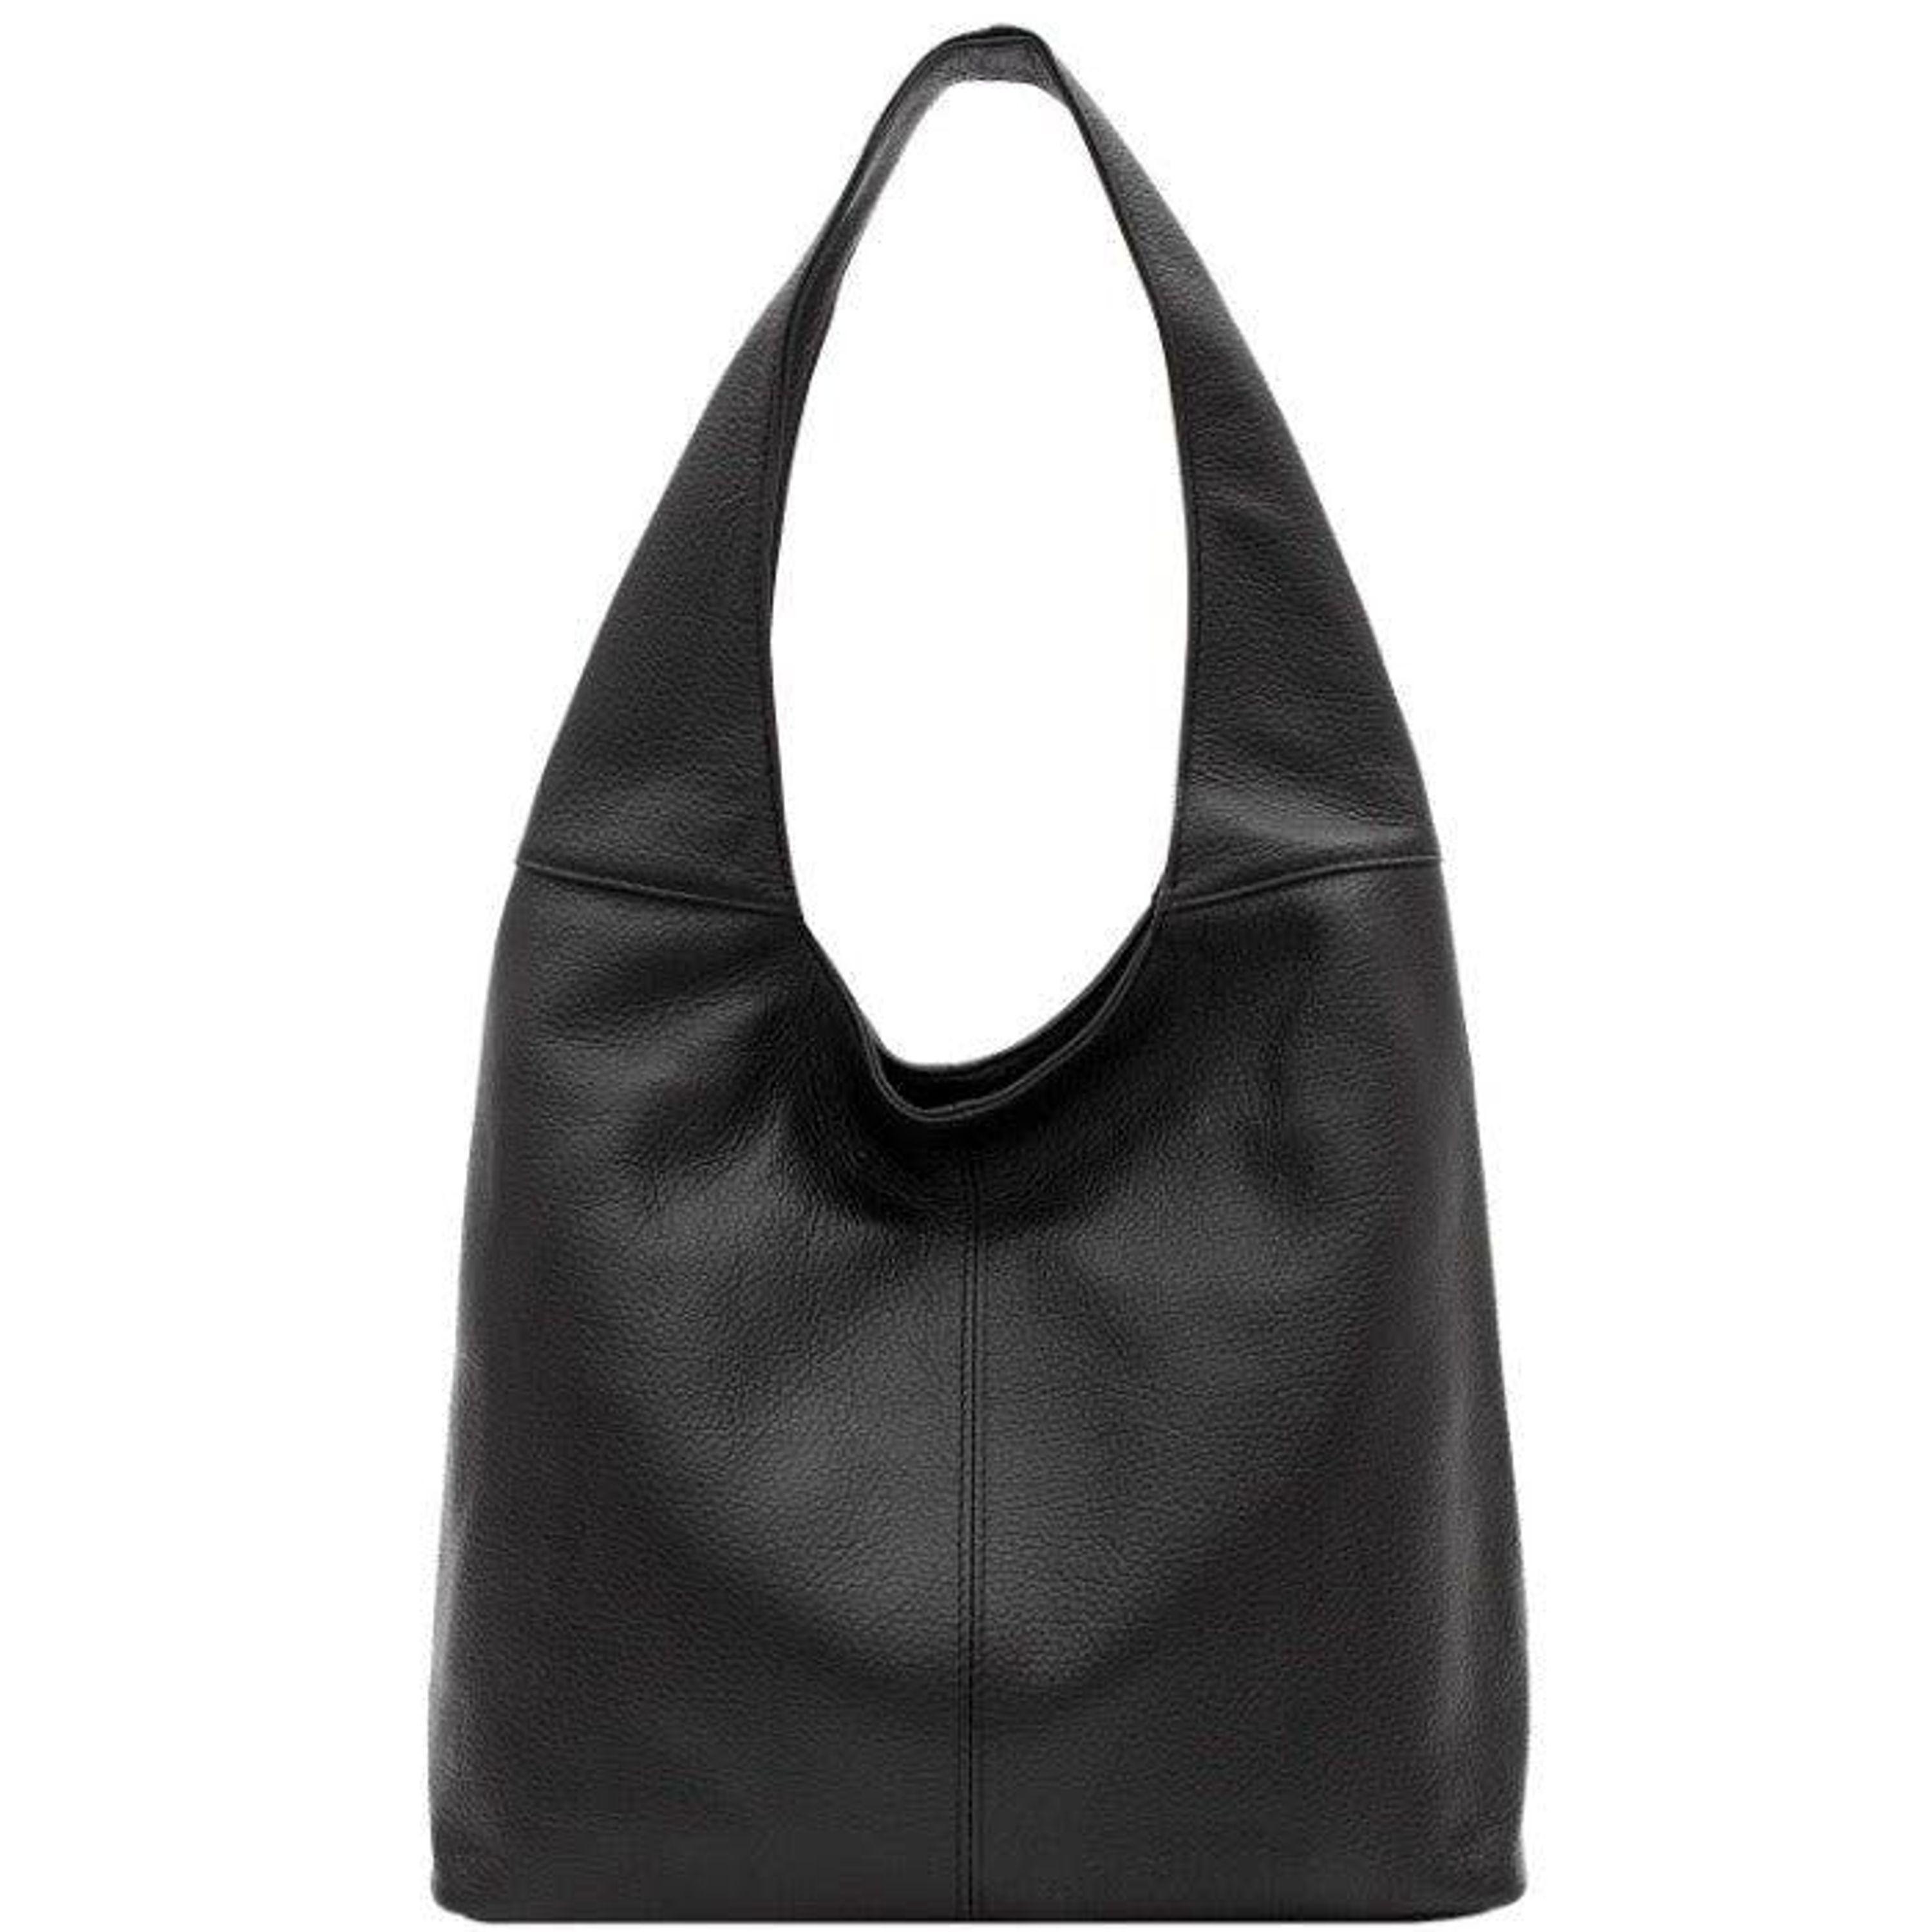 Sostter Black Soft Pebbled Leather Hobo Bag | Lyst